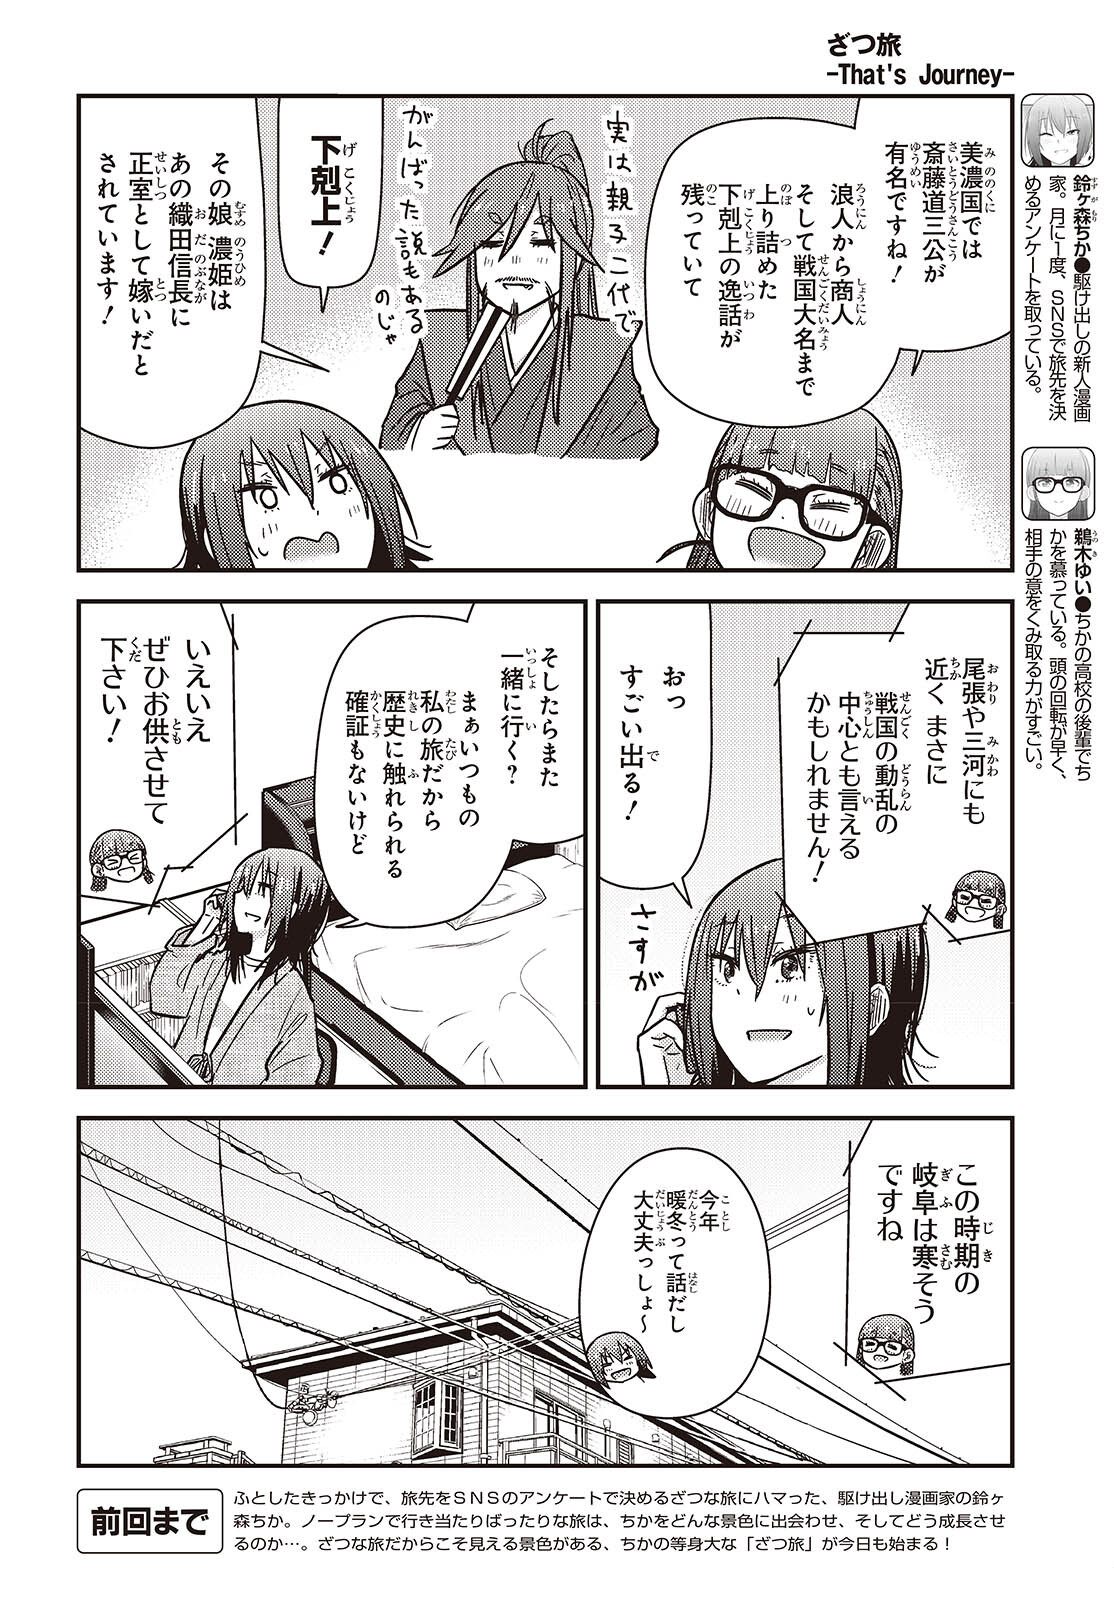 ざつ旅–That?s Journey– 第36話 - Page 2